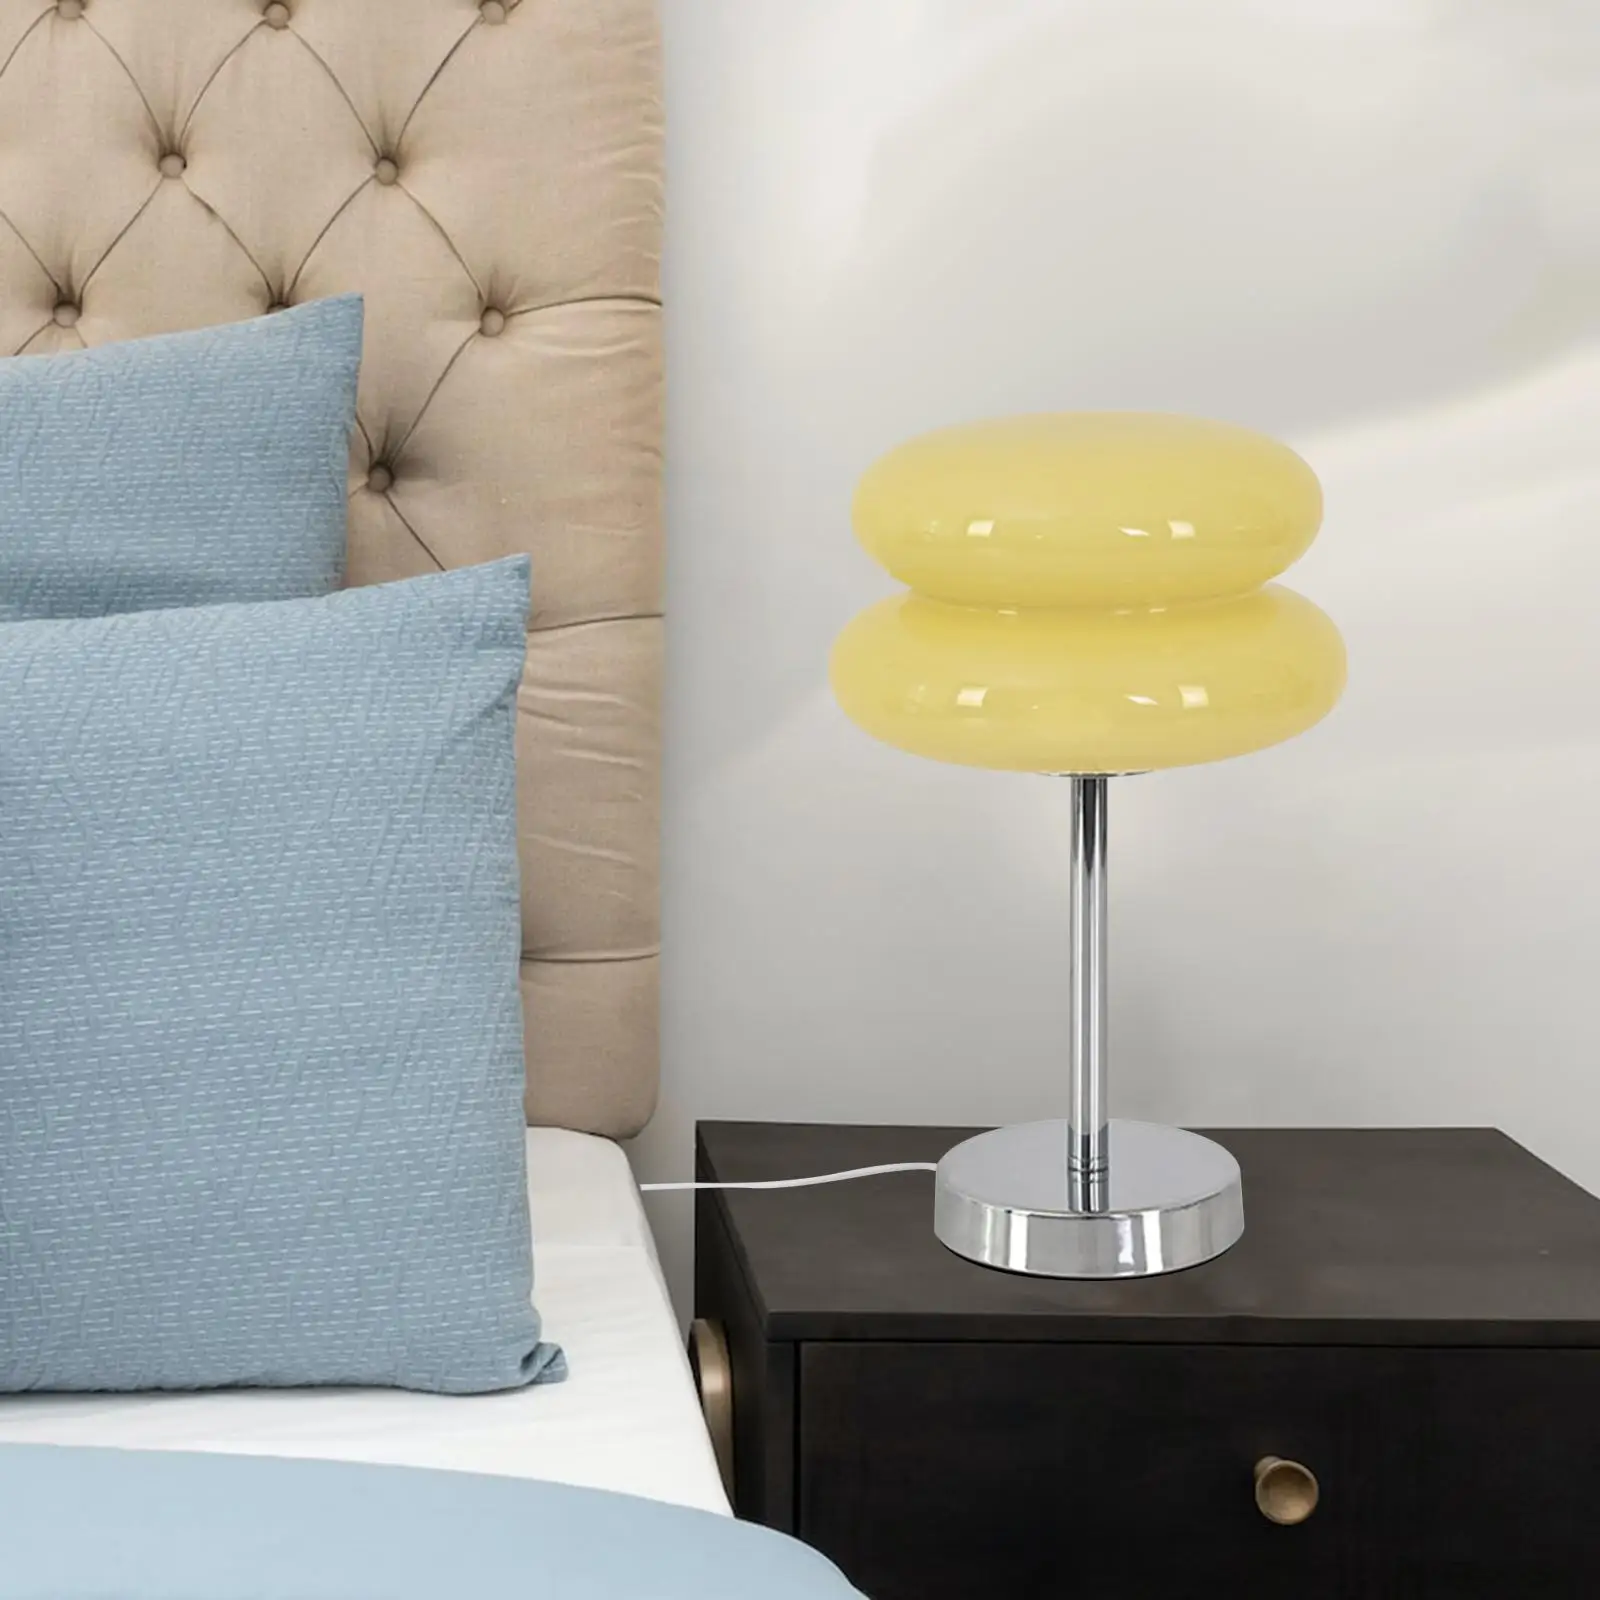 Egg Tart Mushroom Lamp Glass Table Lamp INS Atmosphere for Office desklight